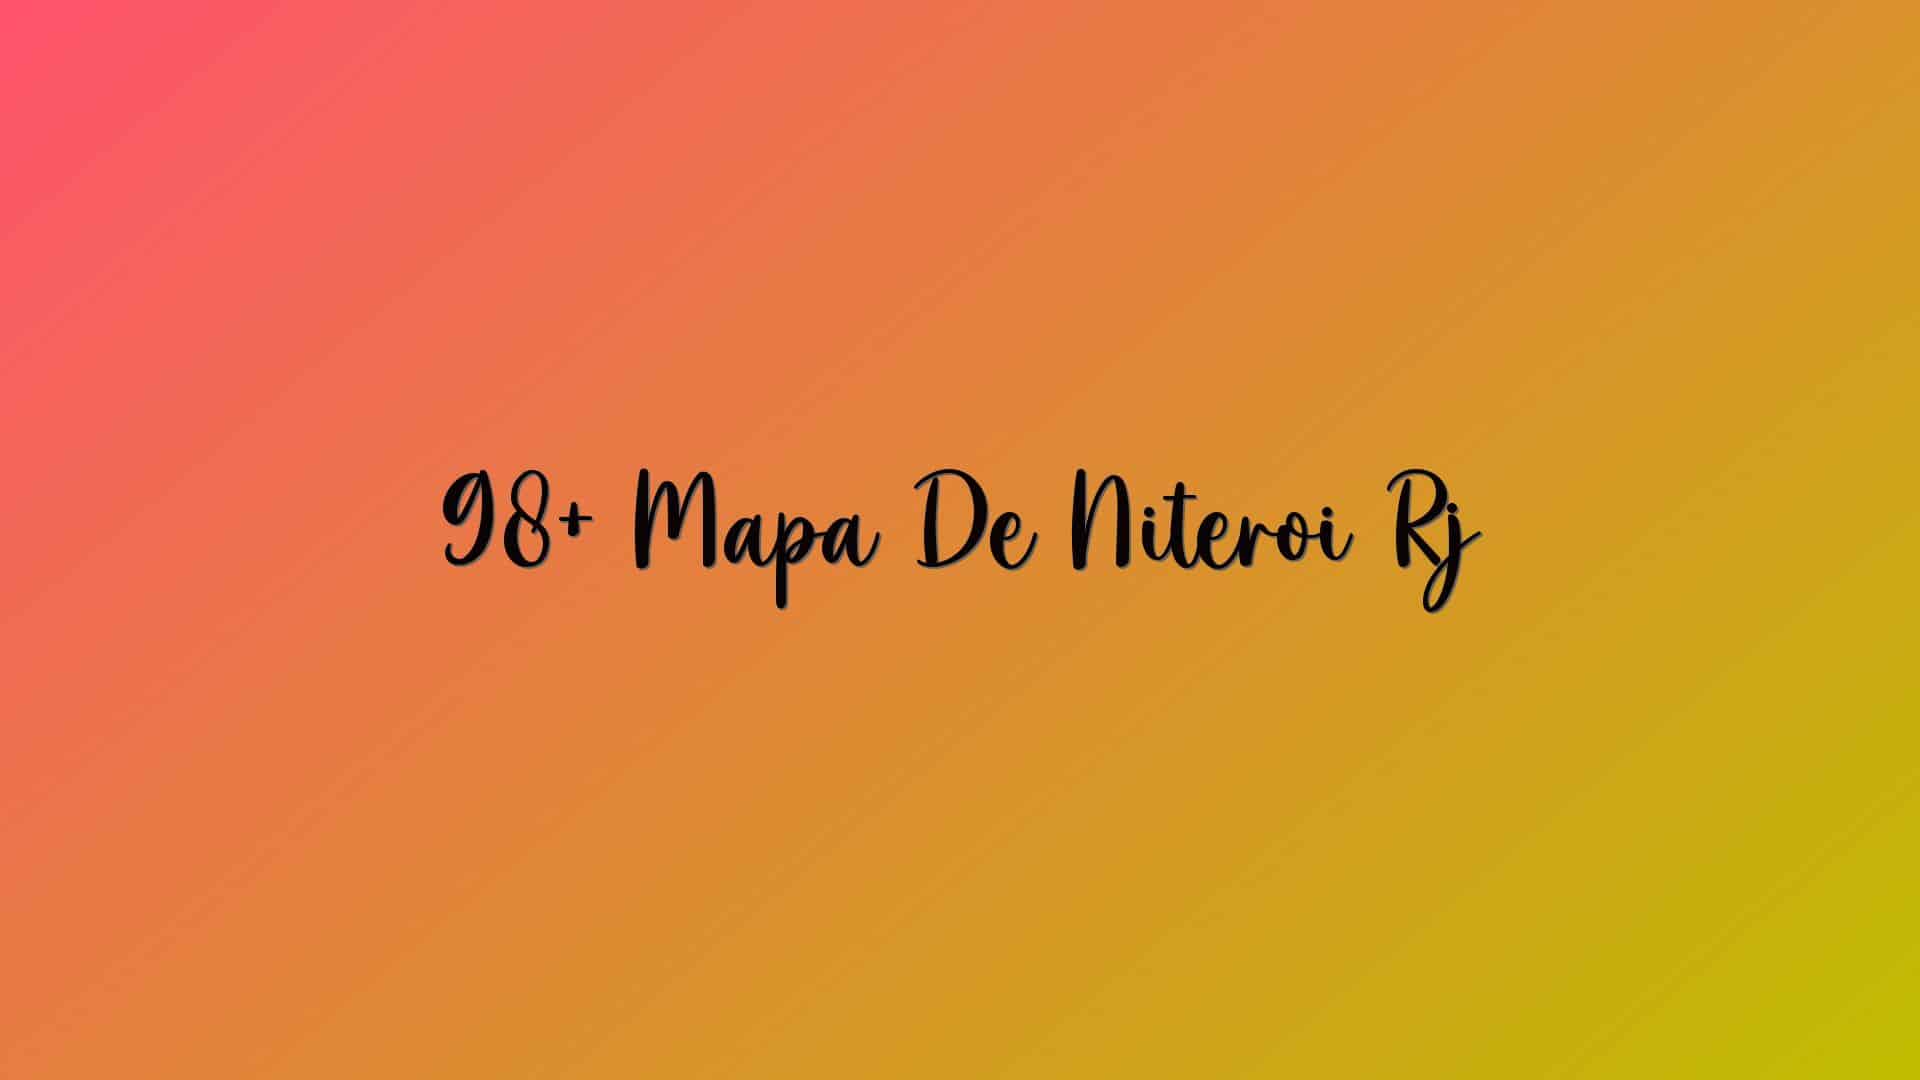 98+ Mapa De Niteroi Rj